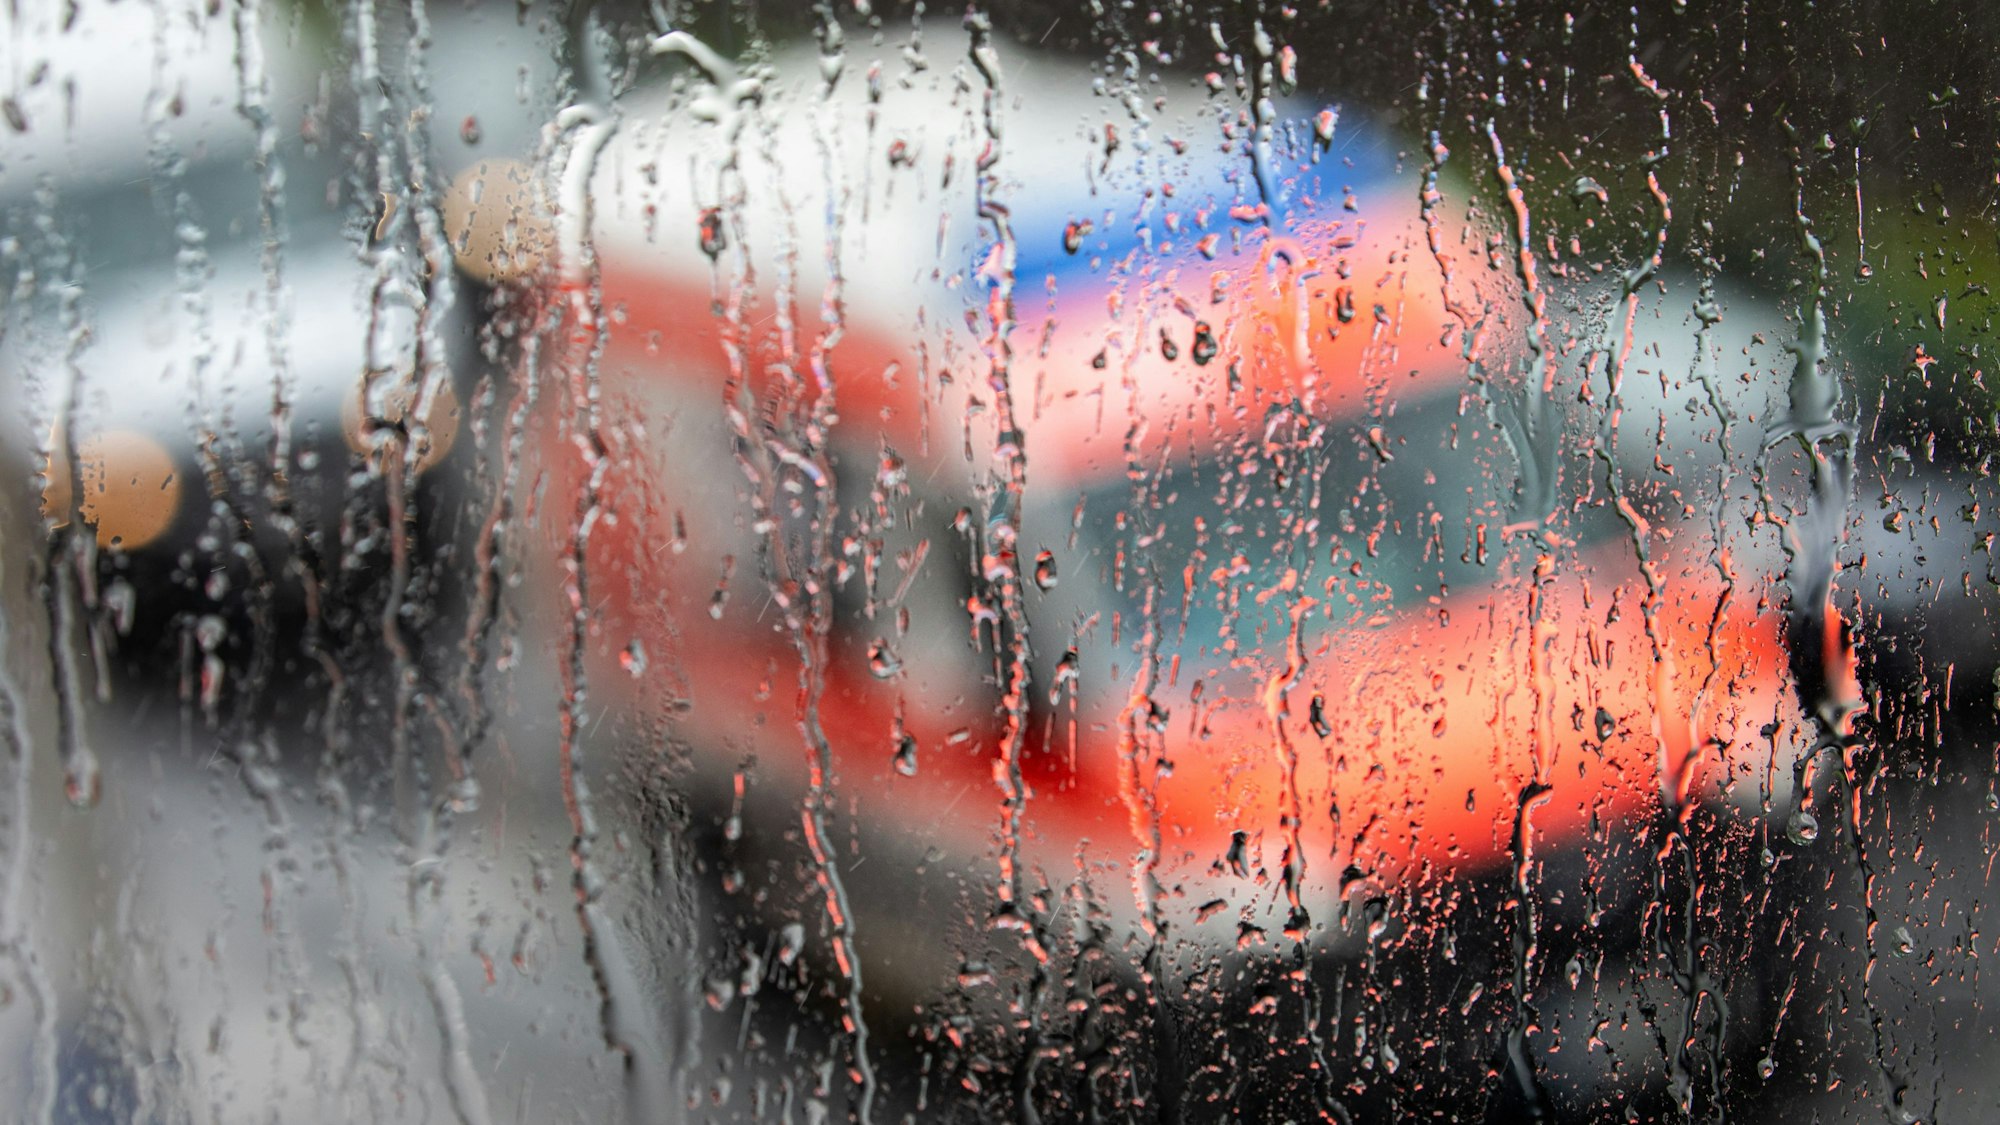 Ein Rettungswagen ist hinter einer Fensterscheibe zu sehen auf der sich  während eines Unwetters mit Gewitter und Starkregen im Ortsteil Sülz zahlreiche Regentropfen gesammelt haben.